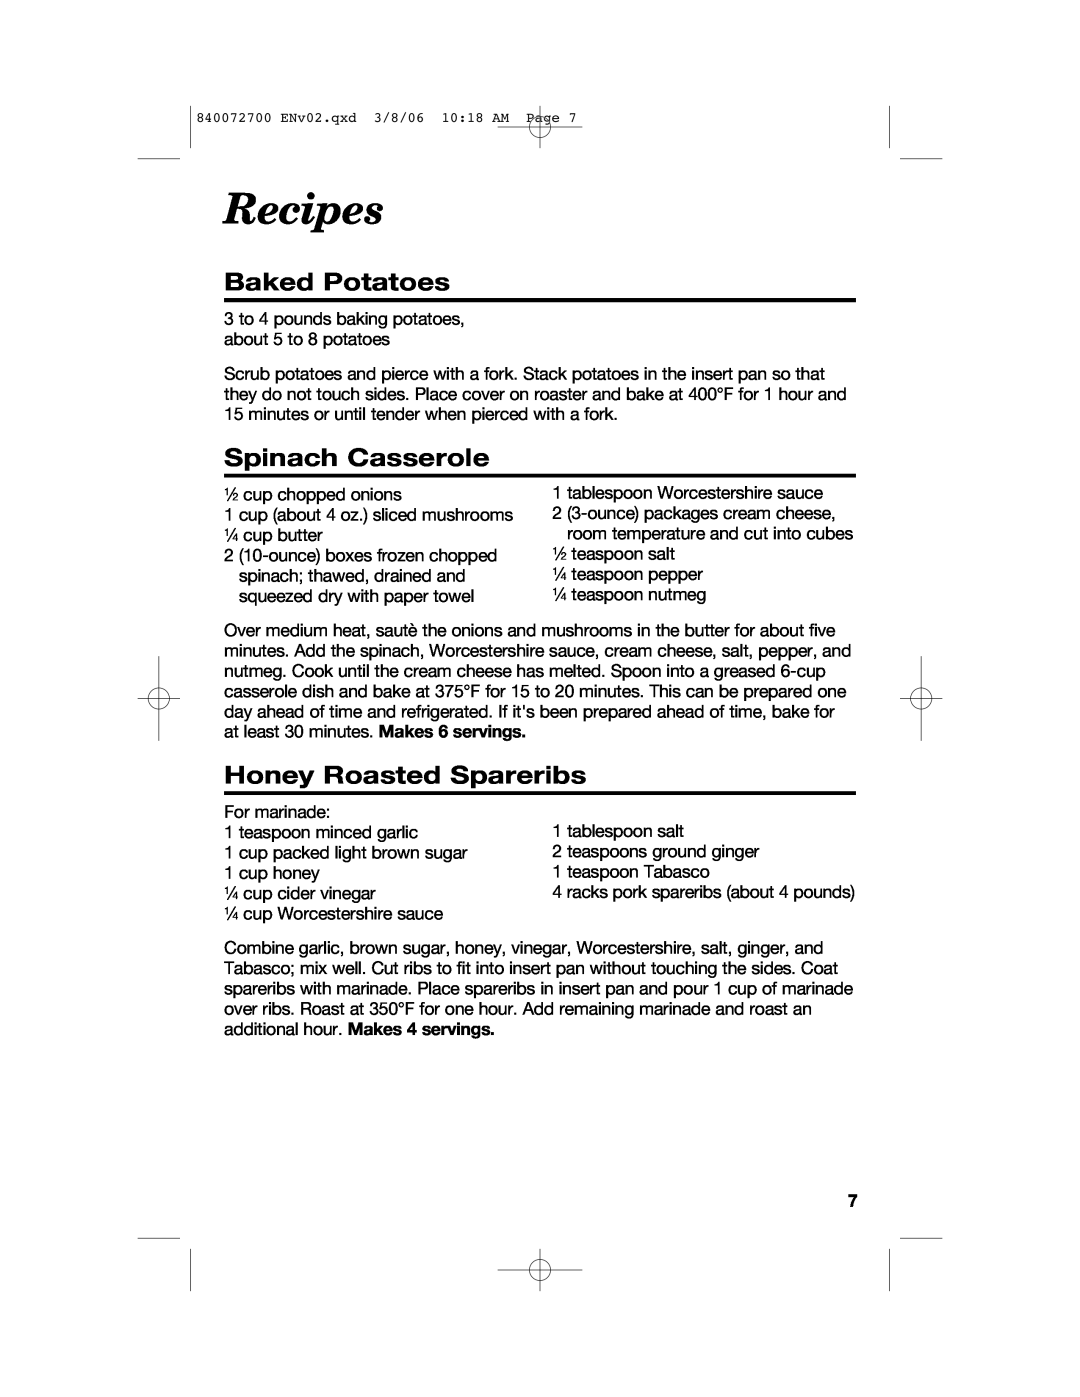 Hamilton Beach 32600s manual Recipes, Baked Potatoes, Spinach Casserole, Honey Roasted Spareribs 